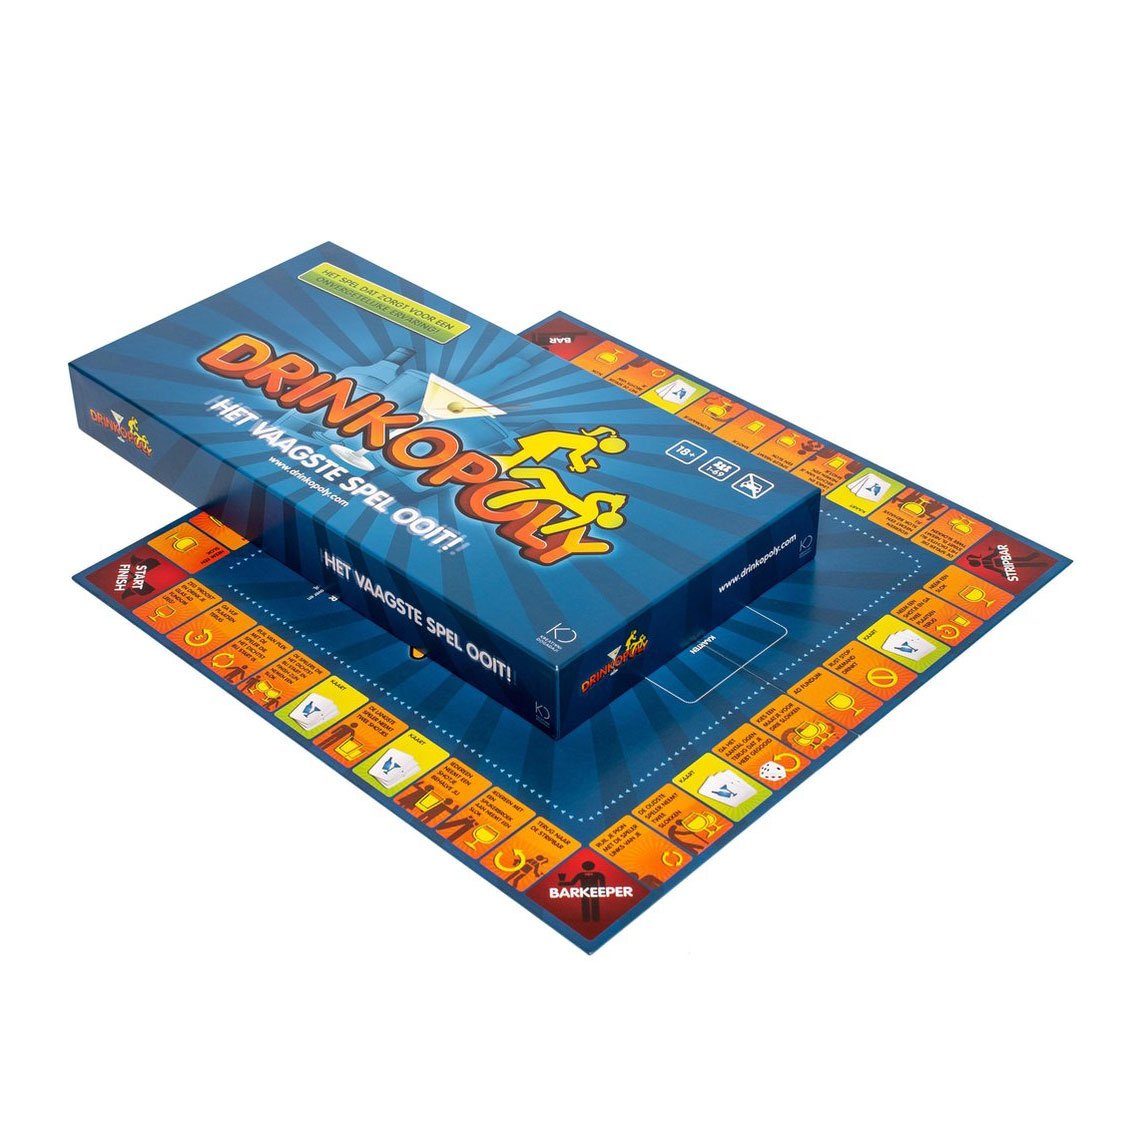 Drinkopoly - Het vaagste spel ooit - Drankspel (NL)